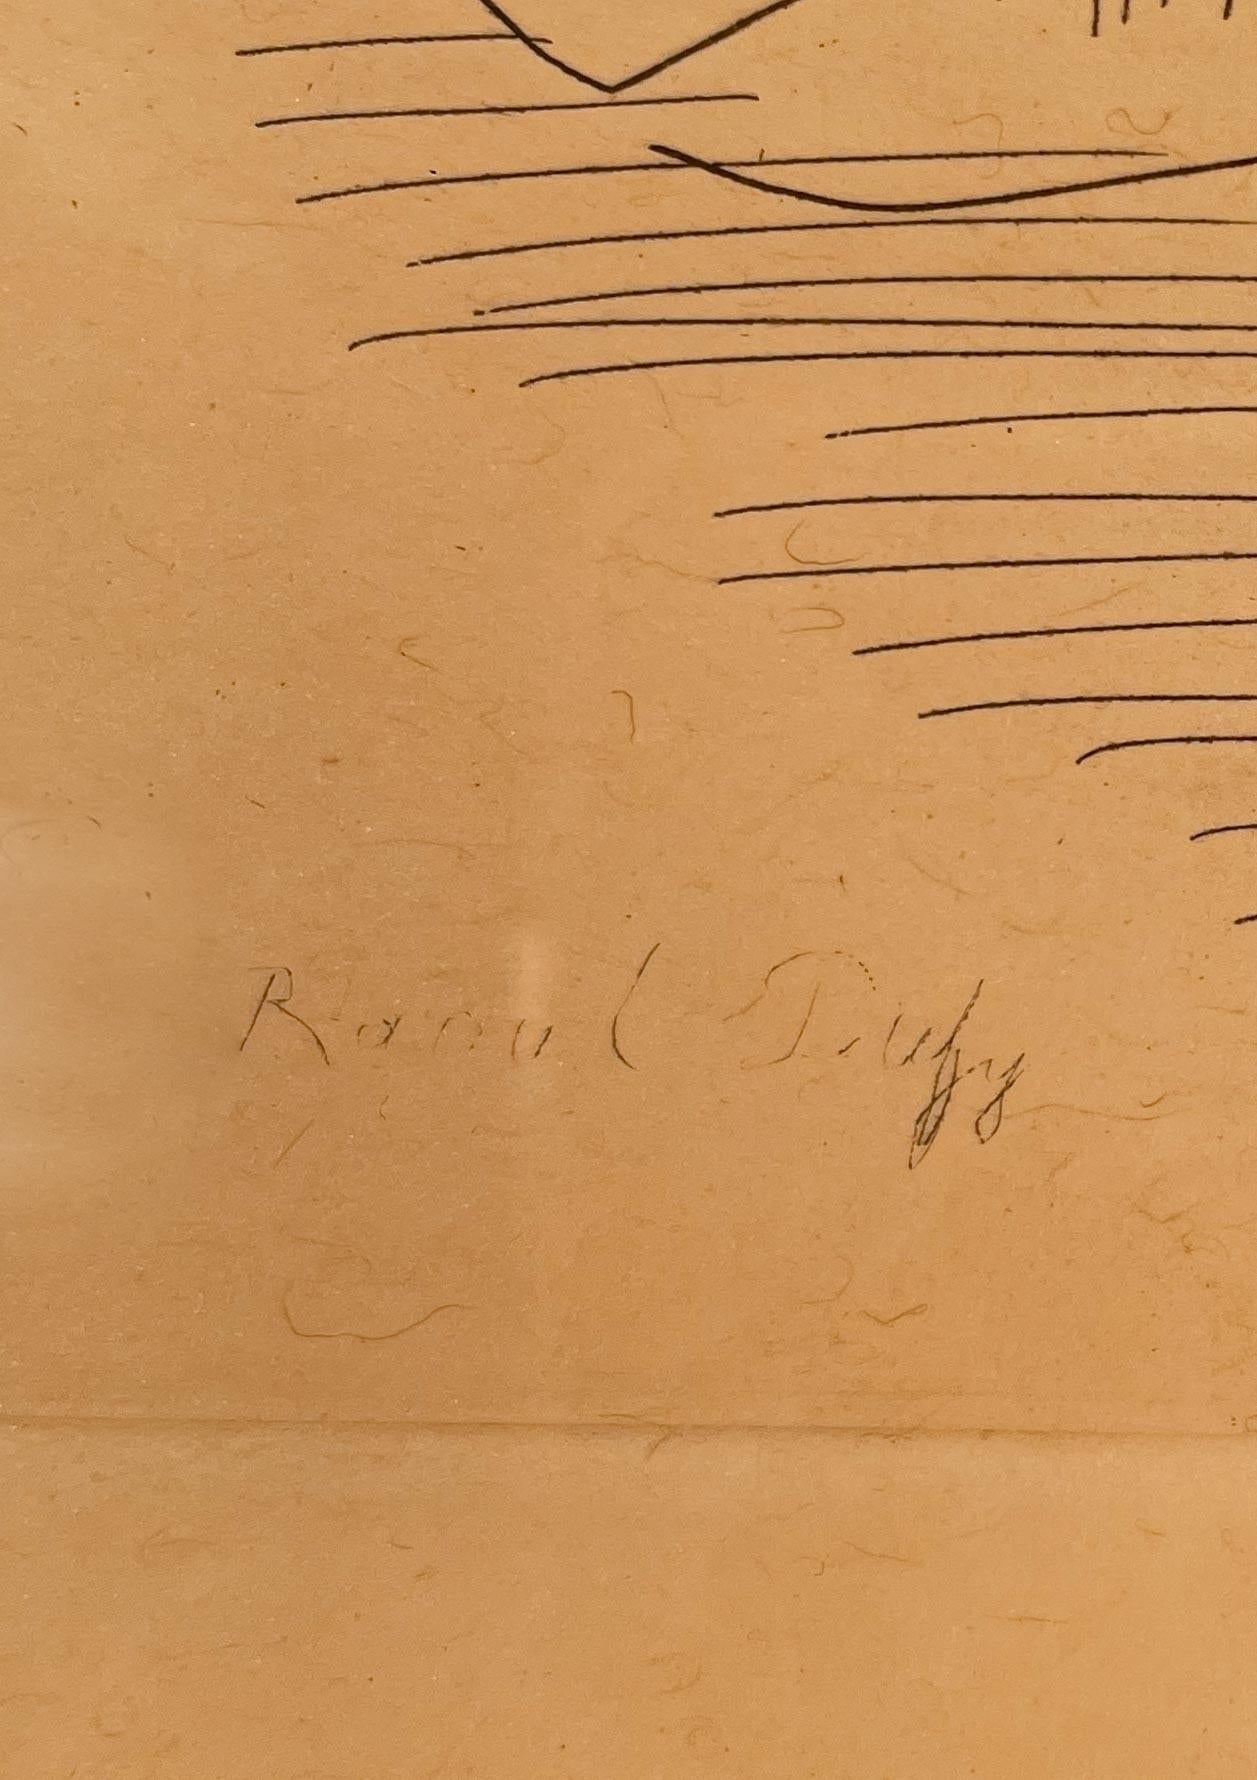 Liegende Frau von Raoul Dufy (1877-1953)
Radierung auf Papier
5 ½ x 7 ½ Zoll ungerahmt (13,716 x 19,05 cm)
13 ⅝ x 15 Zoll gerahmt (34,6202 x 38,1 cm)
Signiert unten links
Ausgabe von 19/200

Beschreibung:
Raoul Dufy porträtiert auf diesem Bild eine